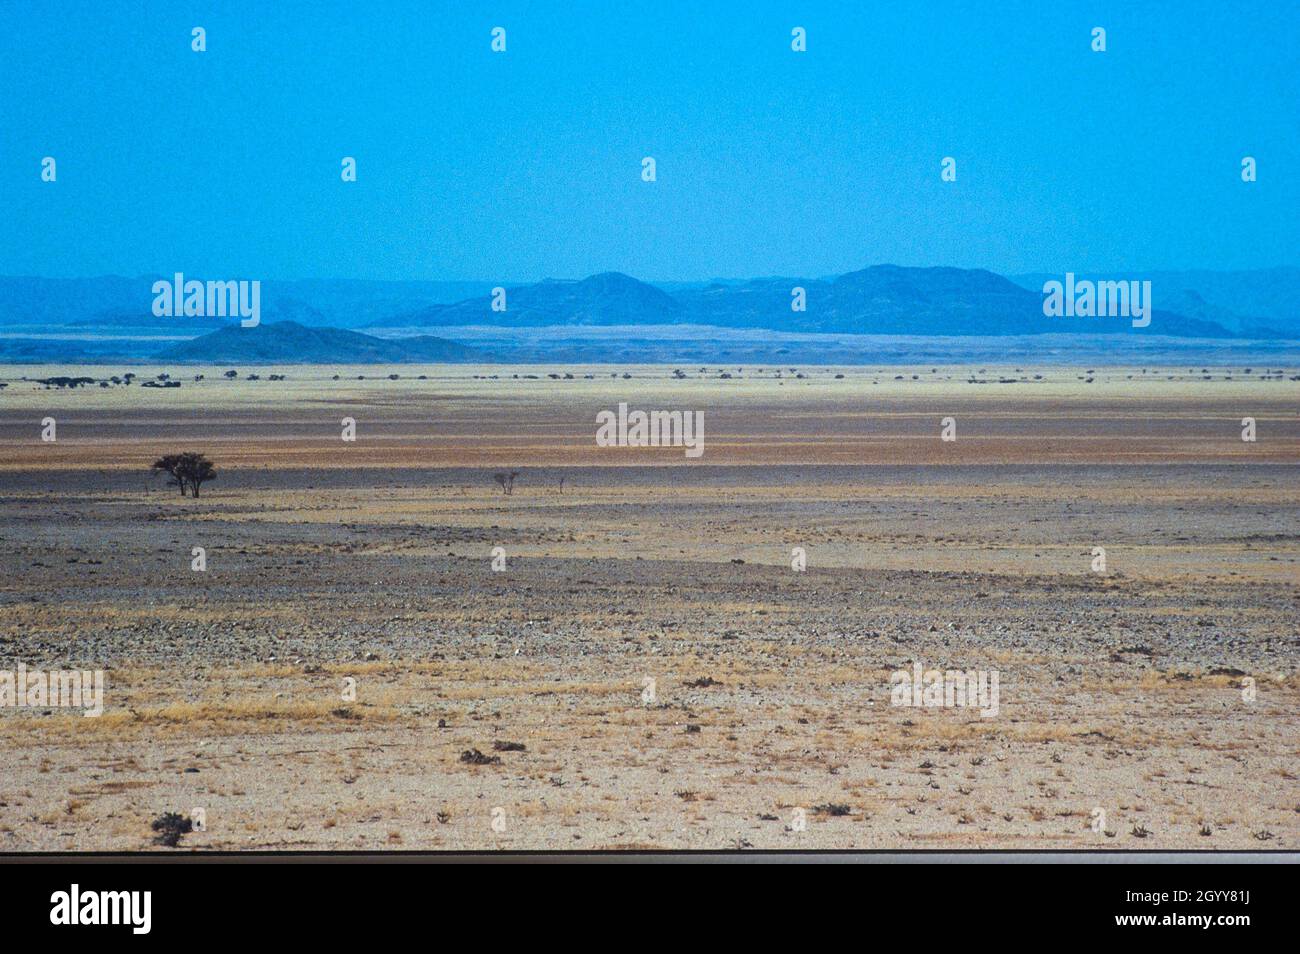 El desierto de Namib. Árido por más de 80 millones de años, se cree que es uno de los desiertos más antiguos del mundo. Foto de stock